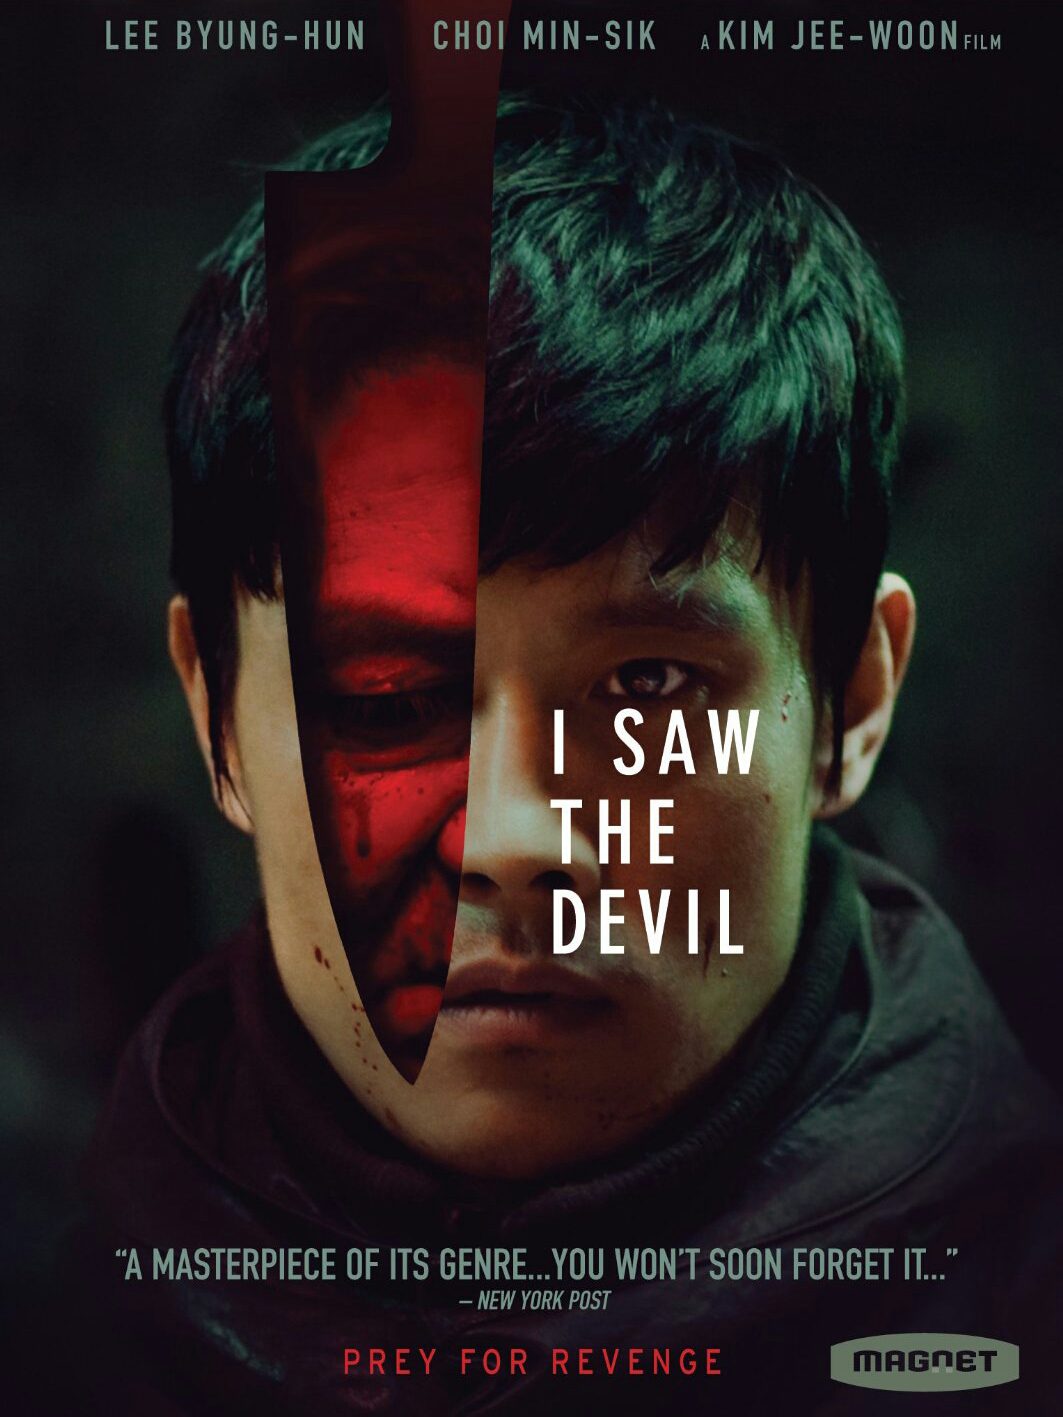 دانلود فیلم I Saw the Devil 2010